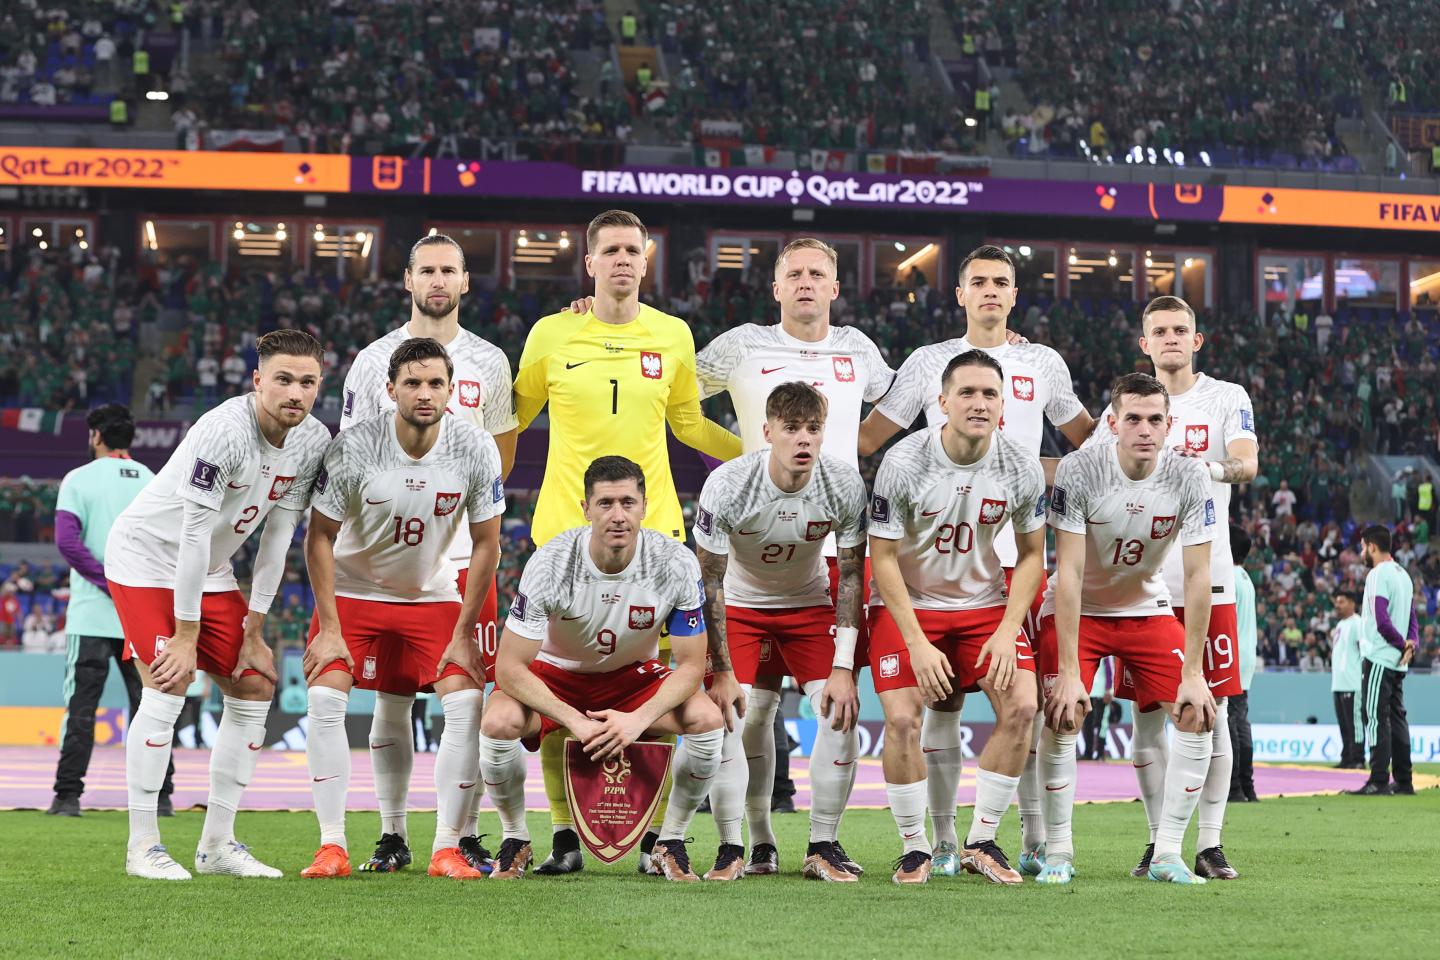 Meksyk - Polska 0:0 (22.11.2022)